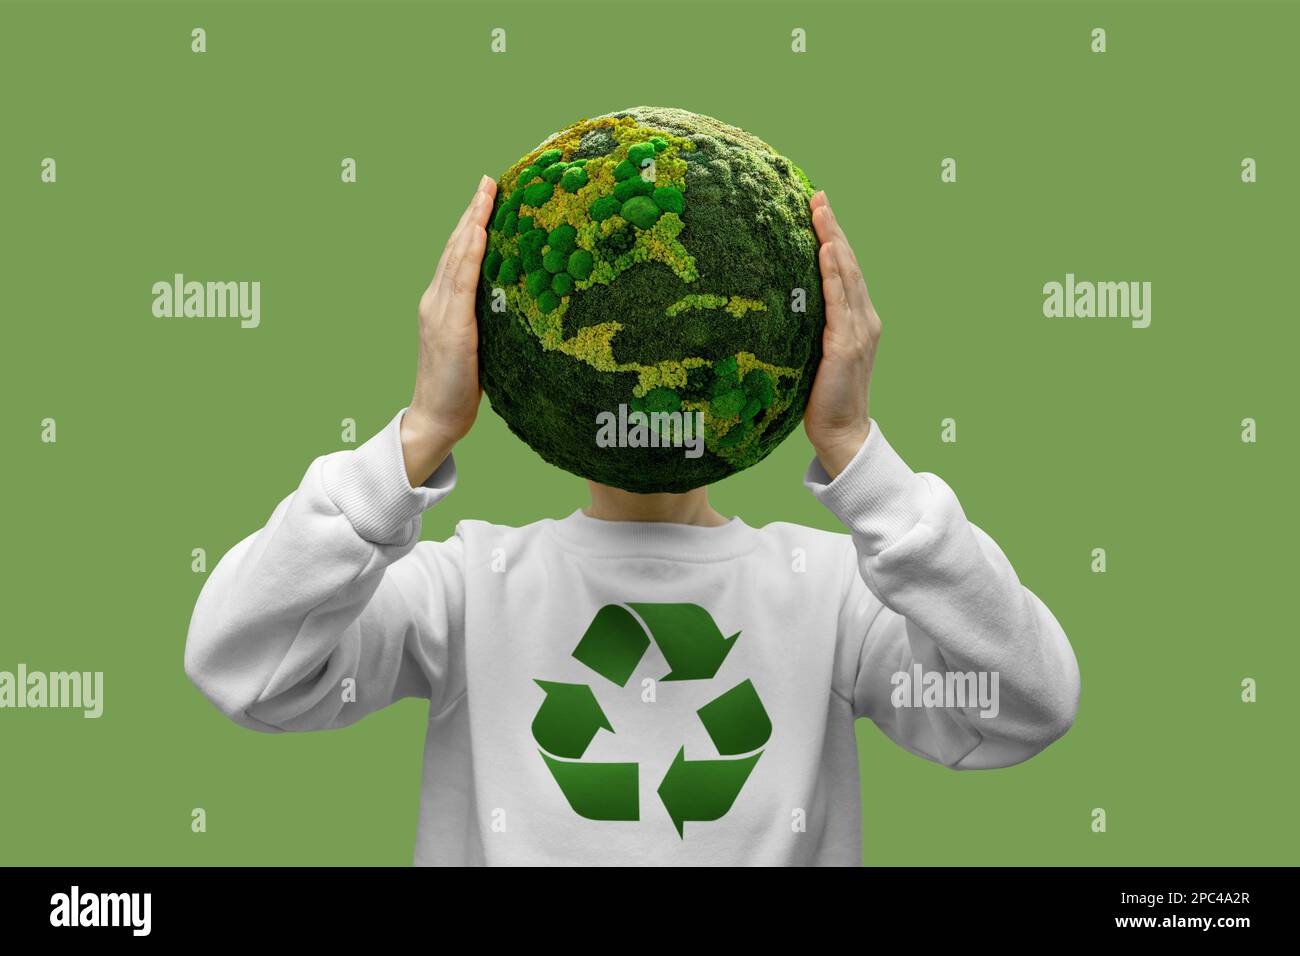 Femme portant une planète verte Terre avec symbole de recyclage Banque D'Images